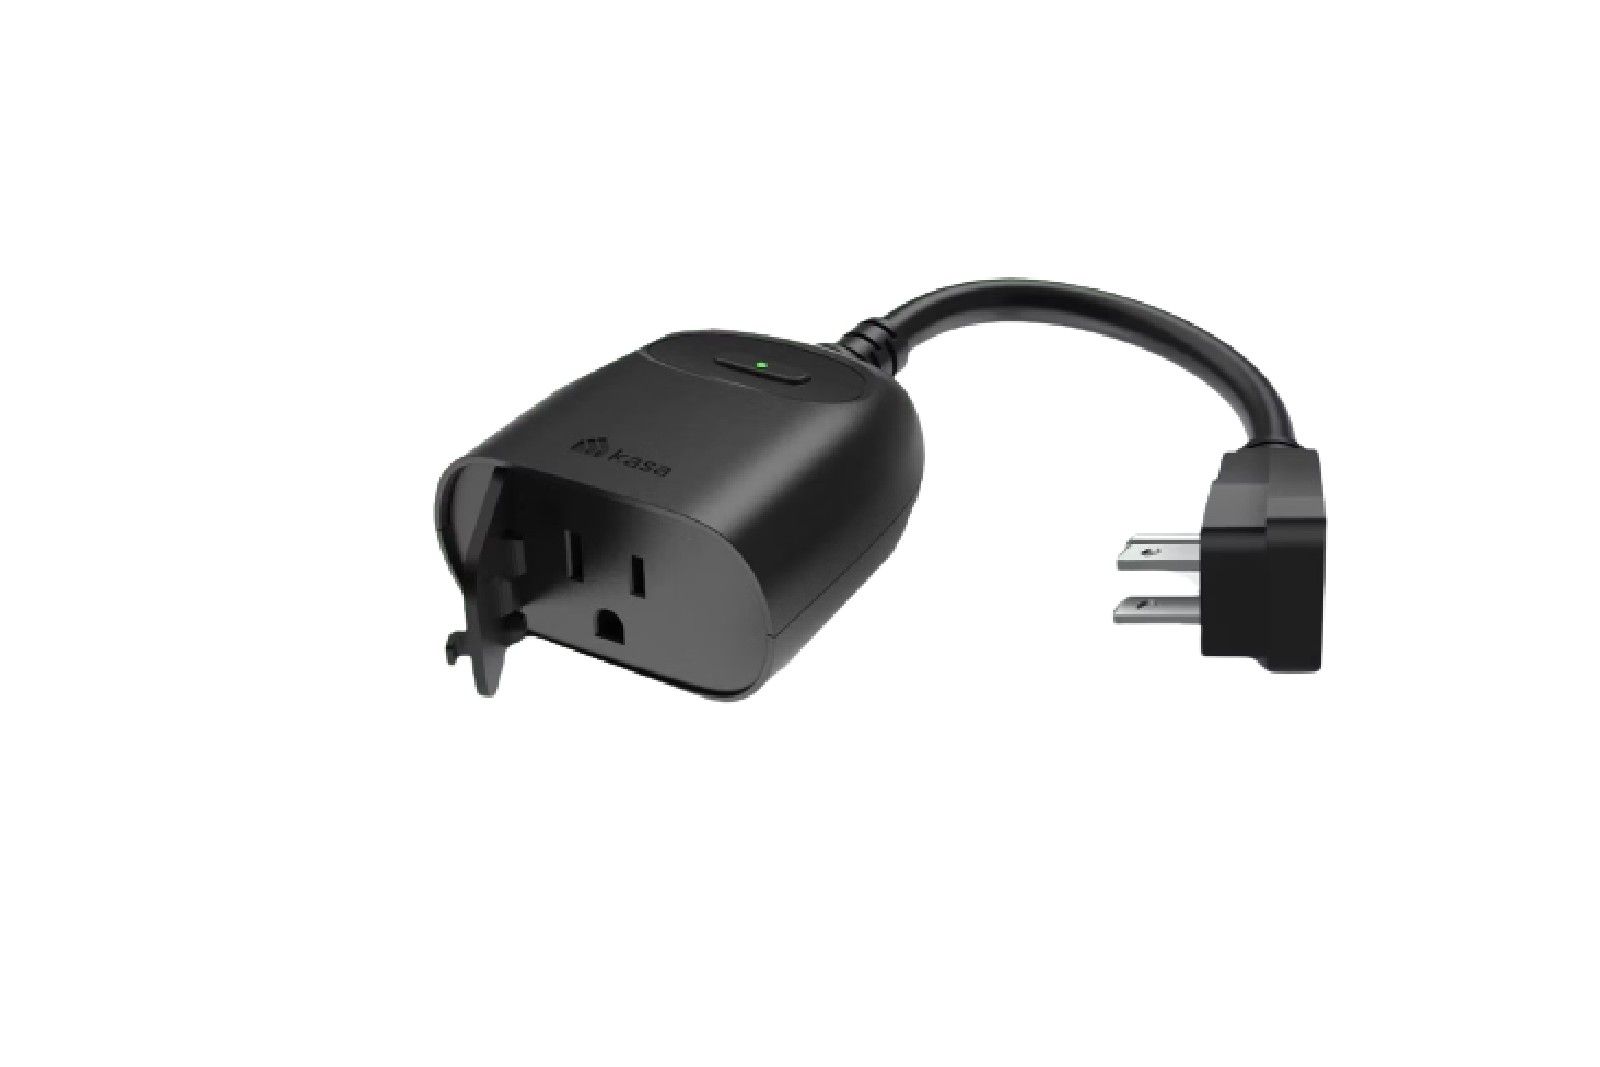 Kasa Smart Plug Mini 15A, Smart Home Wi-Fi Outlet Works with Alexa, Google  Ho